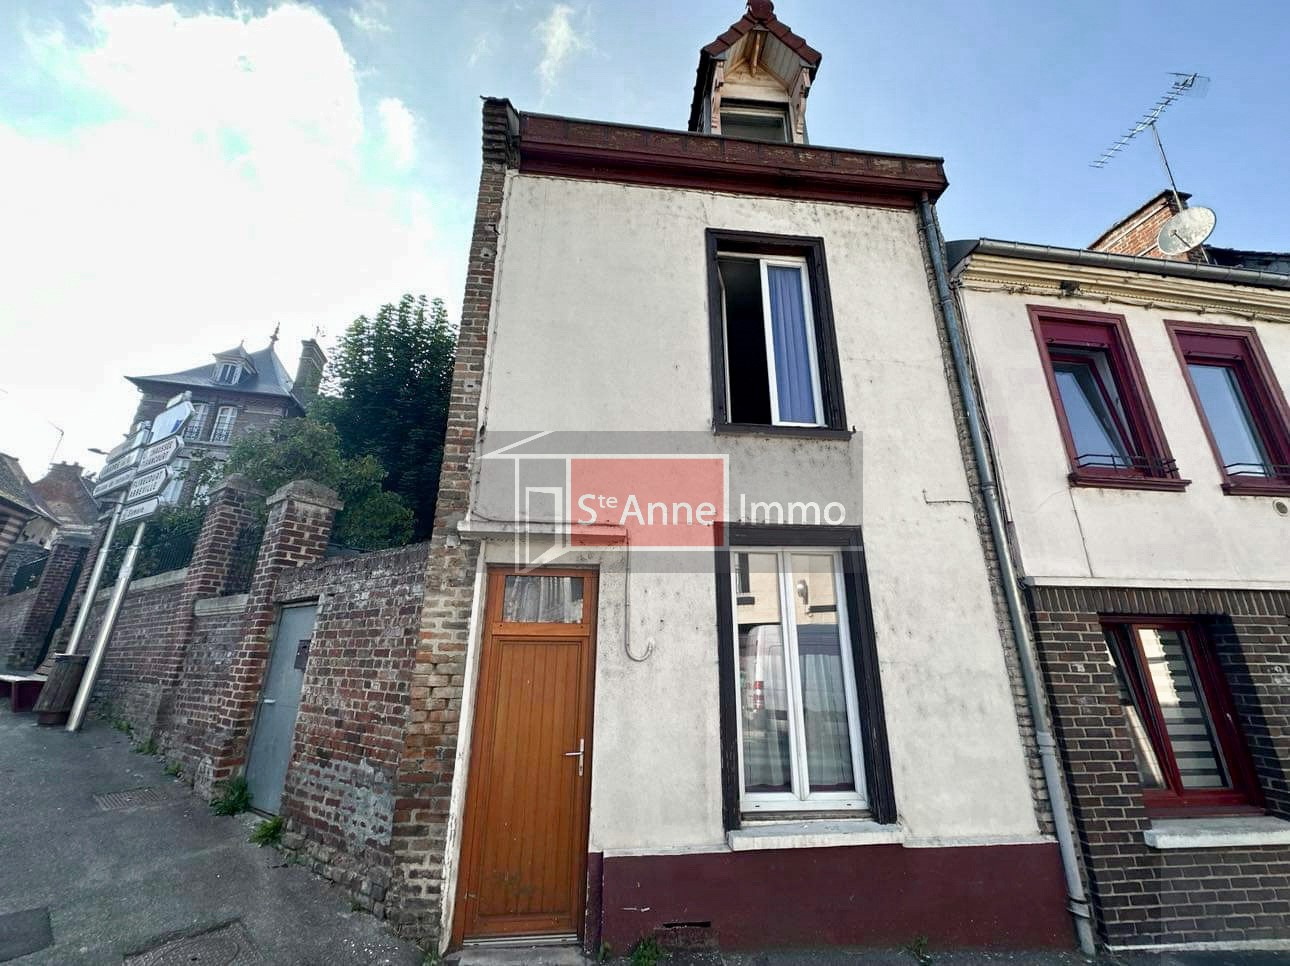 Immo80 – L'immobilier à Amiens et dans la Somme-PICQUIGNY – Investissement locatif – Maison – 60 m2 – 2 chambres – bureau – cour